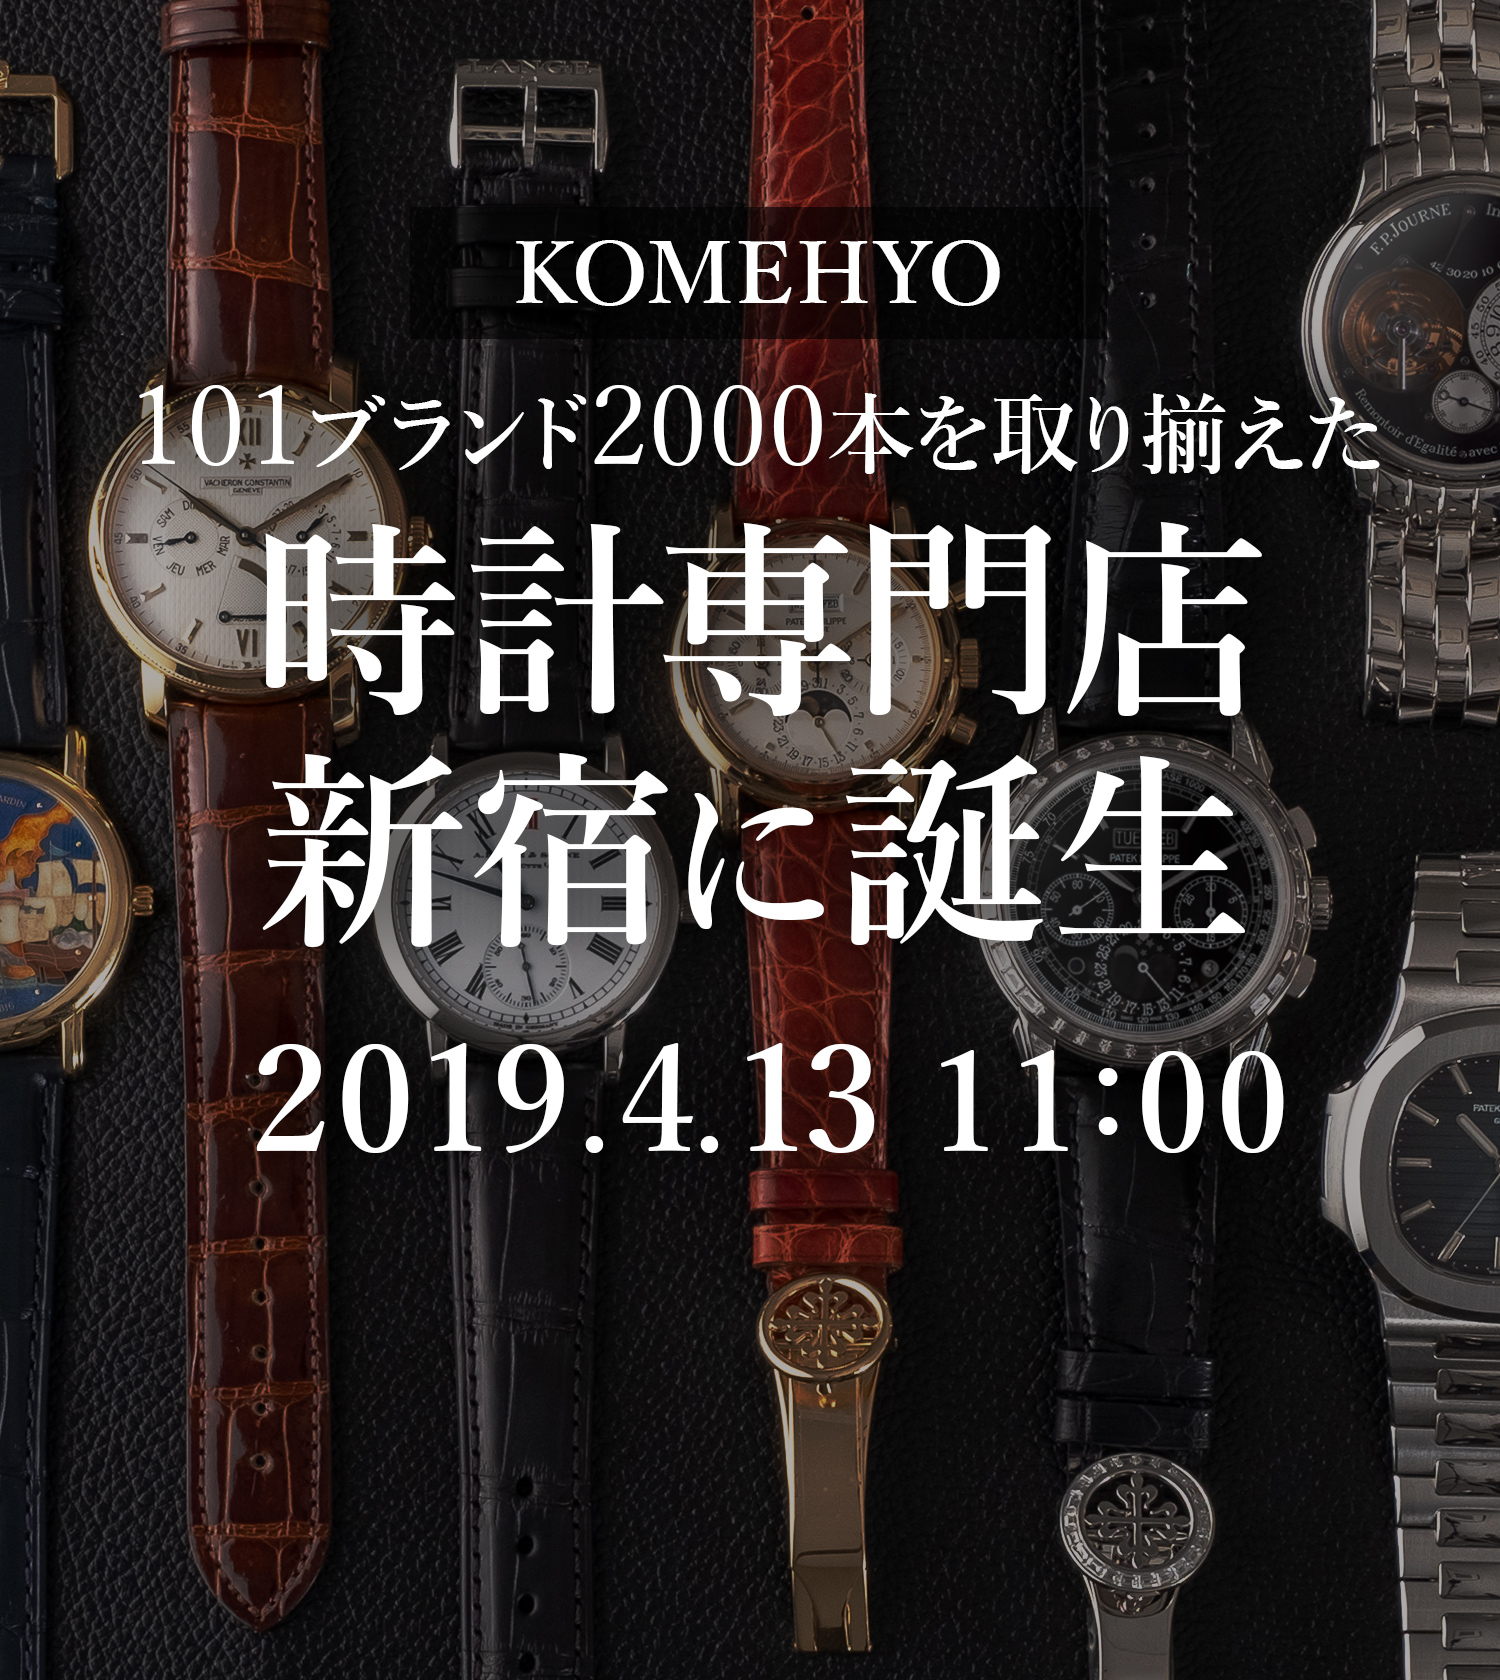 在凑齐2000部101品牌的钟表专营商店新宿诞生2019.4.13 11:00